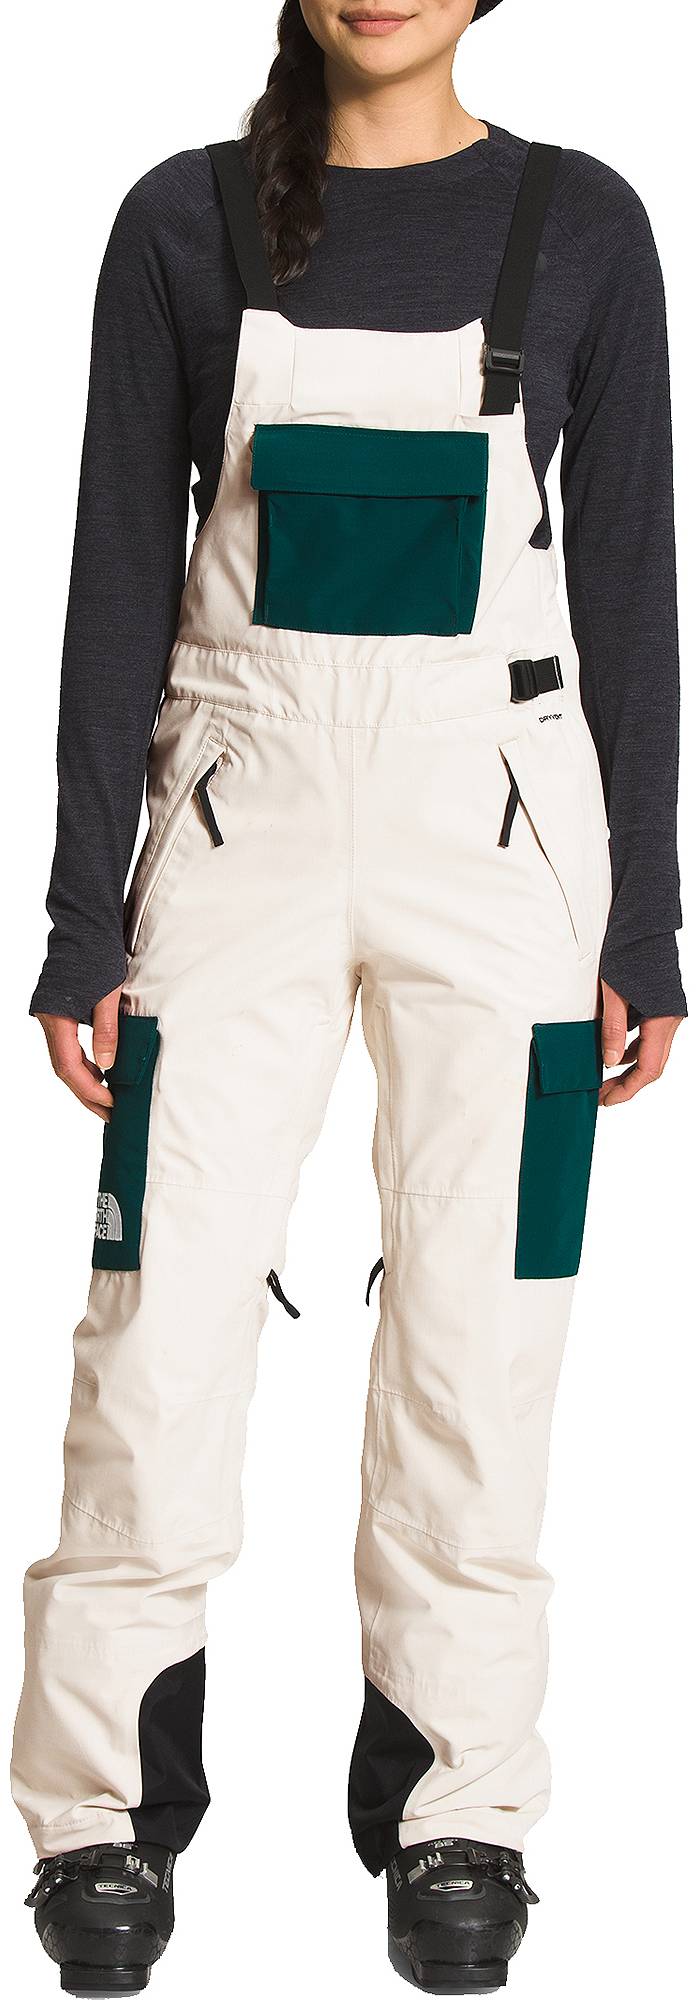 Women's Bib Snow Pants Quilted Overalls Waterproof Suspender